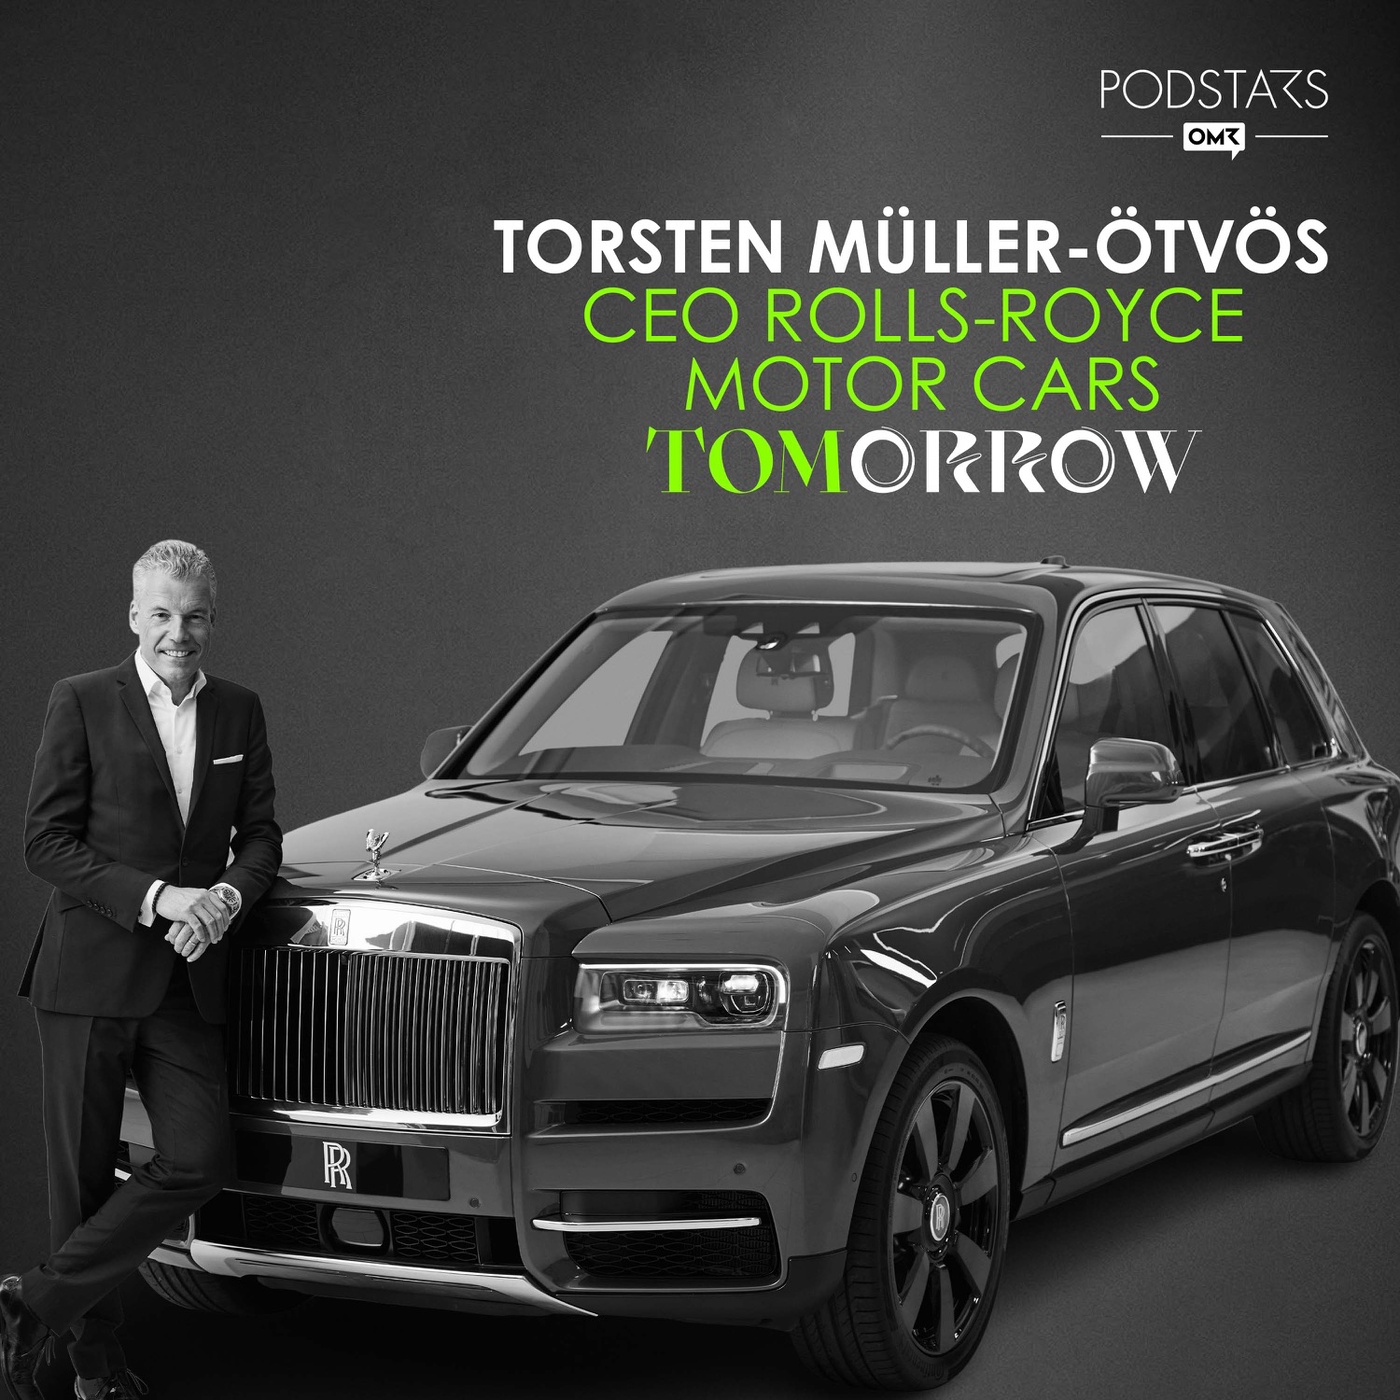 Der ultimative Luxus – mit Torsten Müller-Ötvös, CEO Rolls-Royce Motor Cars